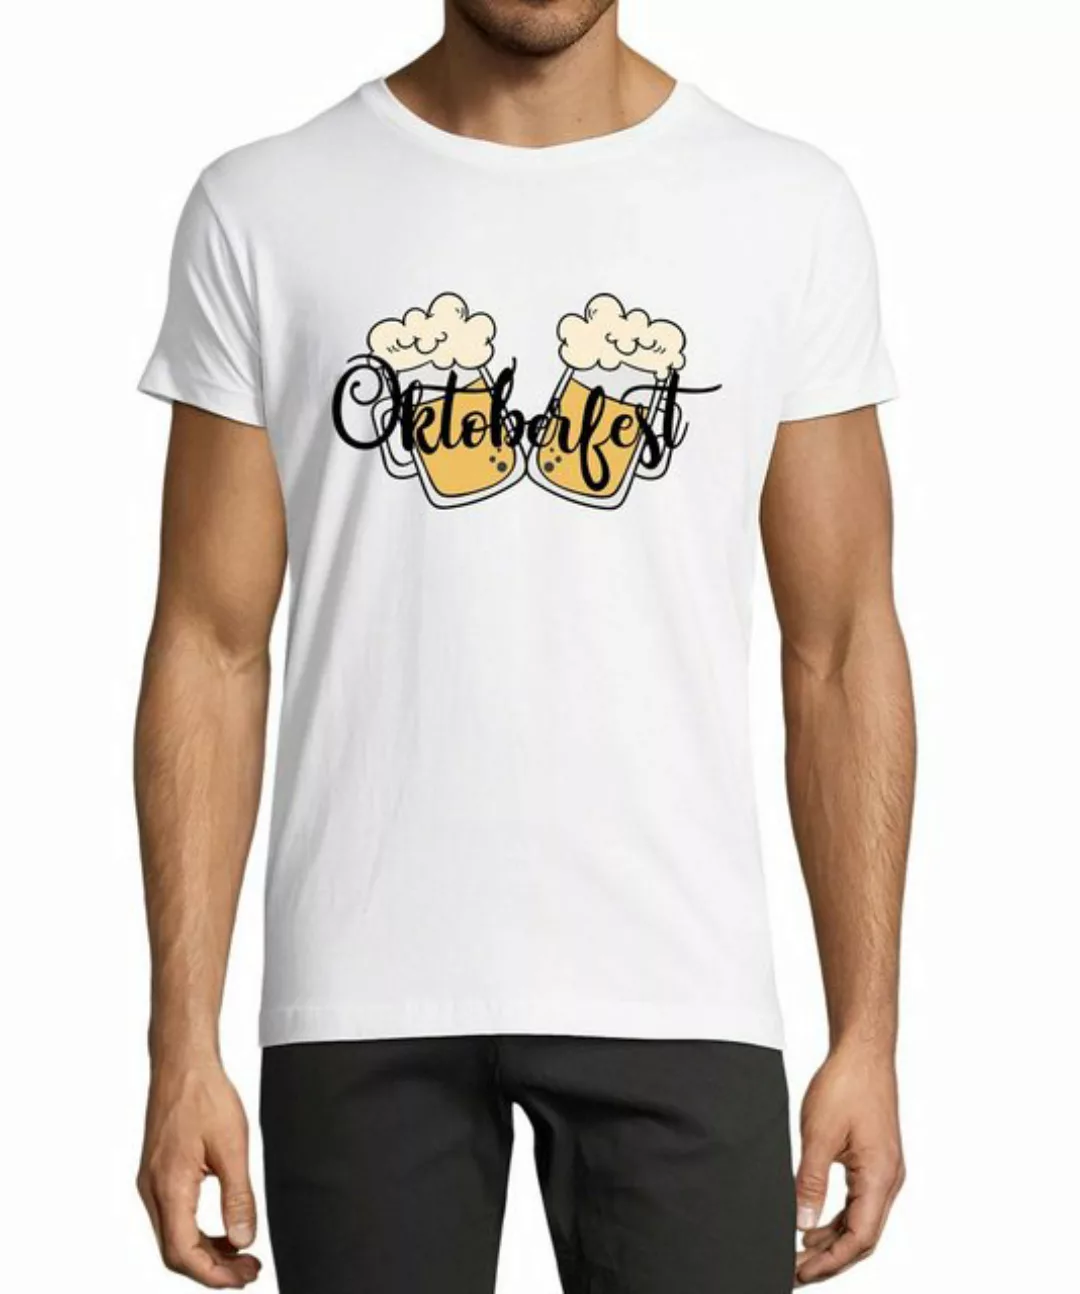 MyDesign24 T-Shirt Herren Party Shirt - Trinkshirt Oktoberfest T-Shirt 2 Bi günstig online kaufen